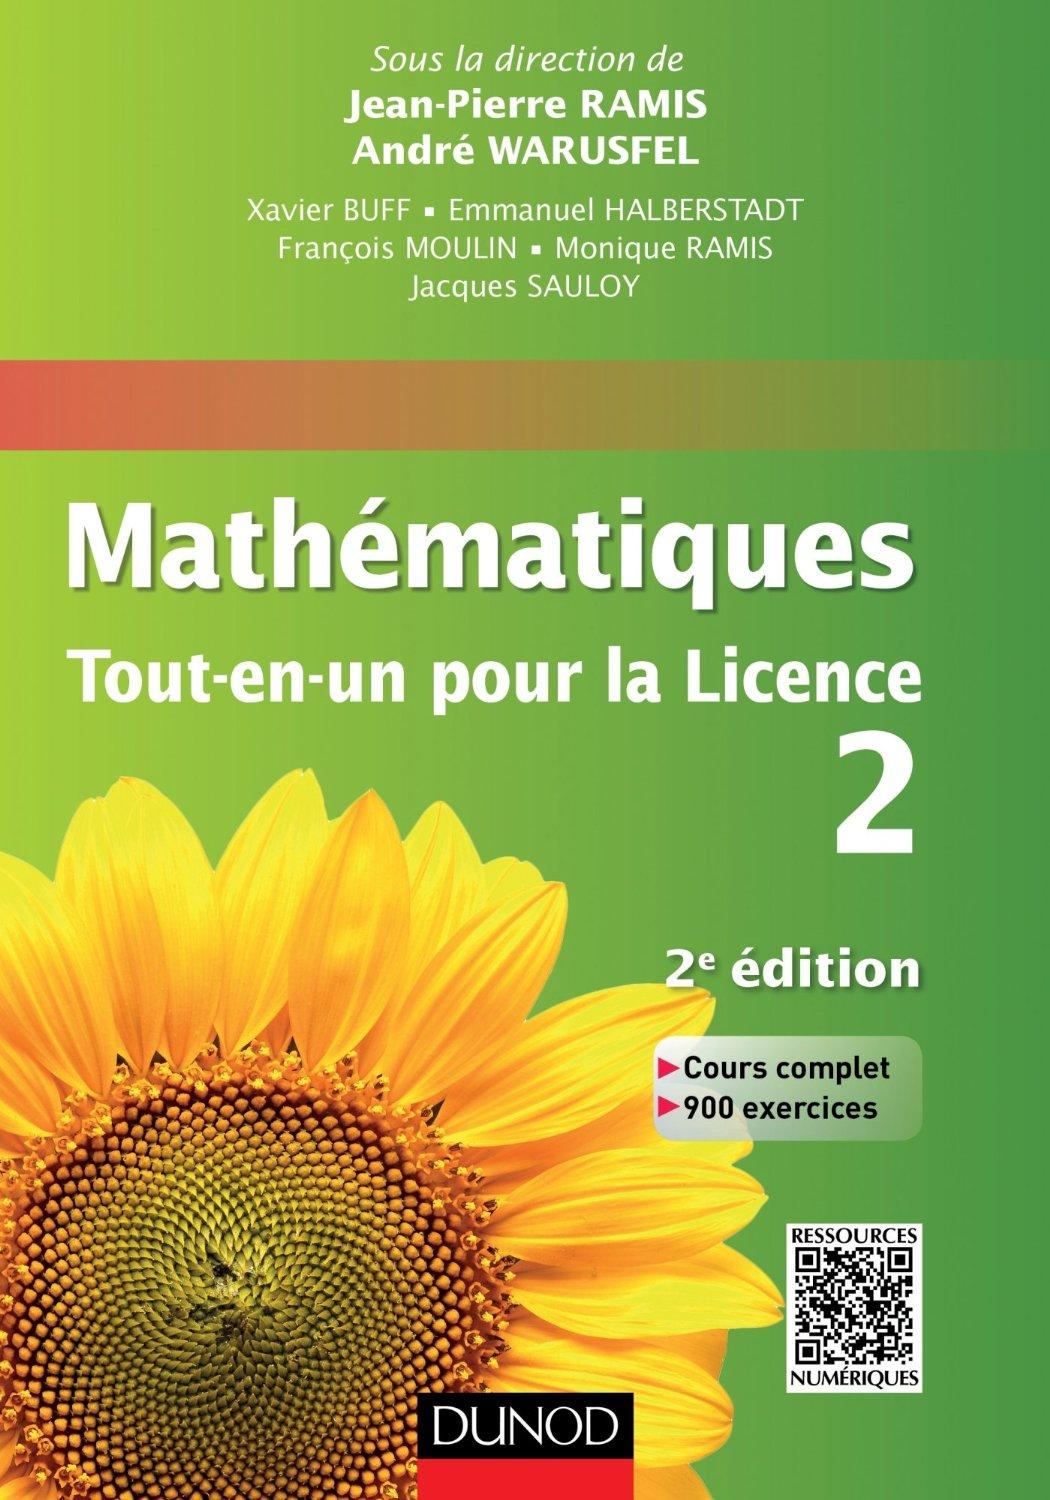 Thumbnail of book Mathématiques Tout-en-un pour la Licence  cover